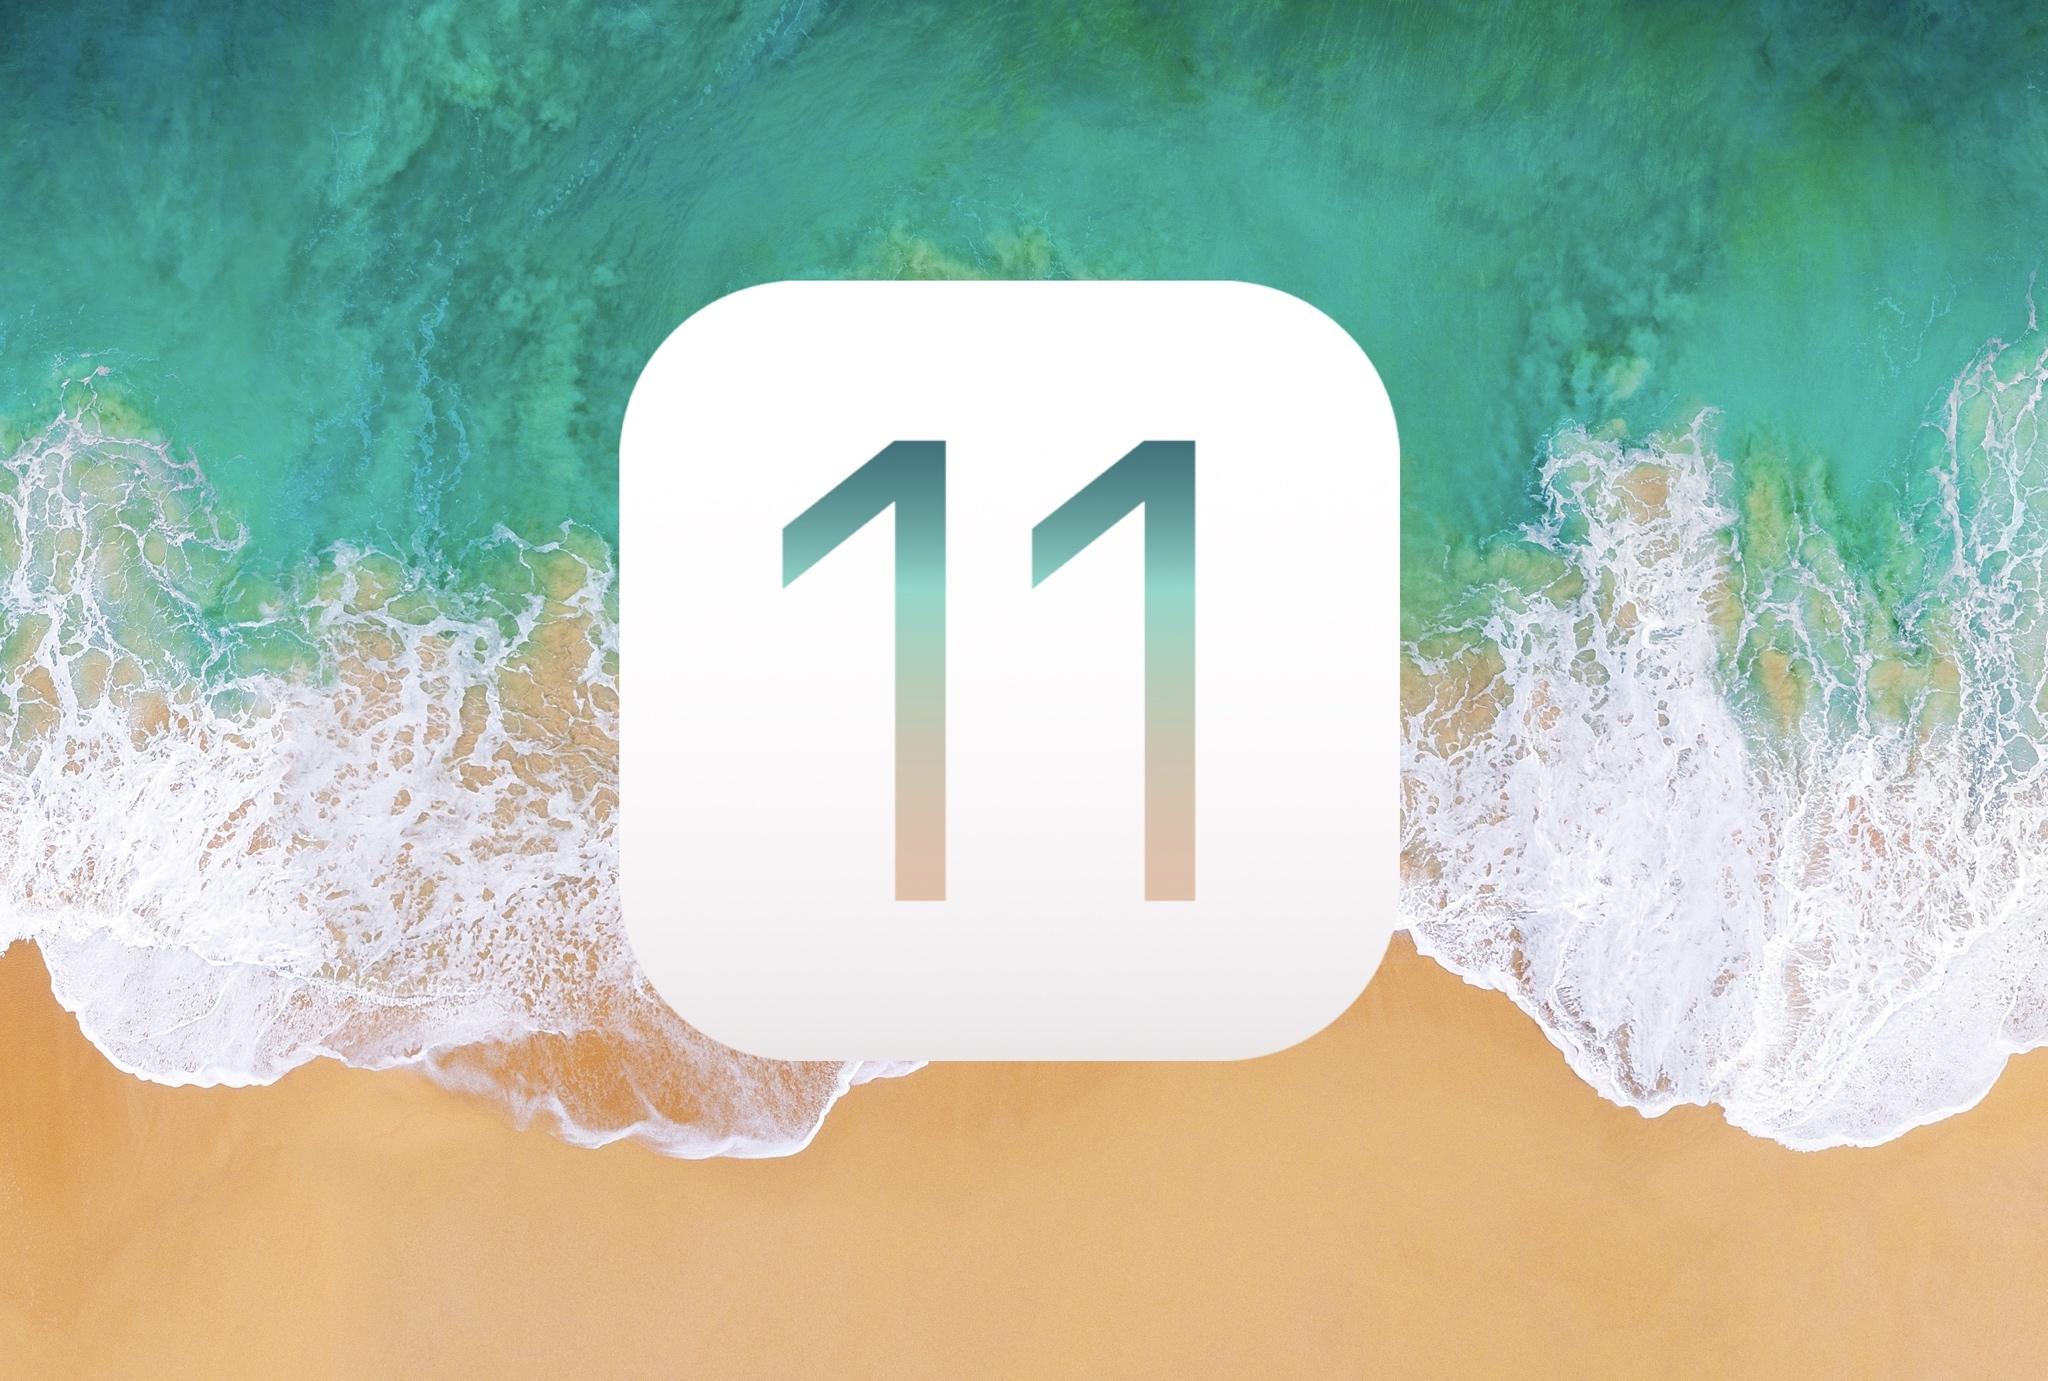 Обновление iOS 11 от Apple. Что нового?